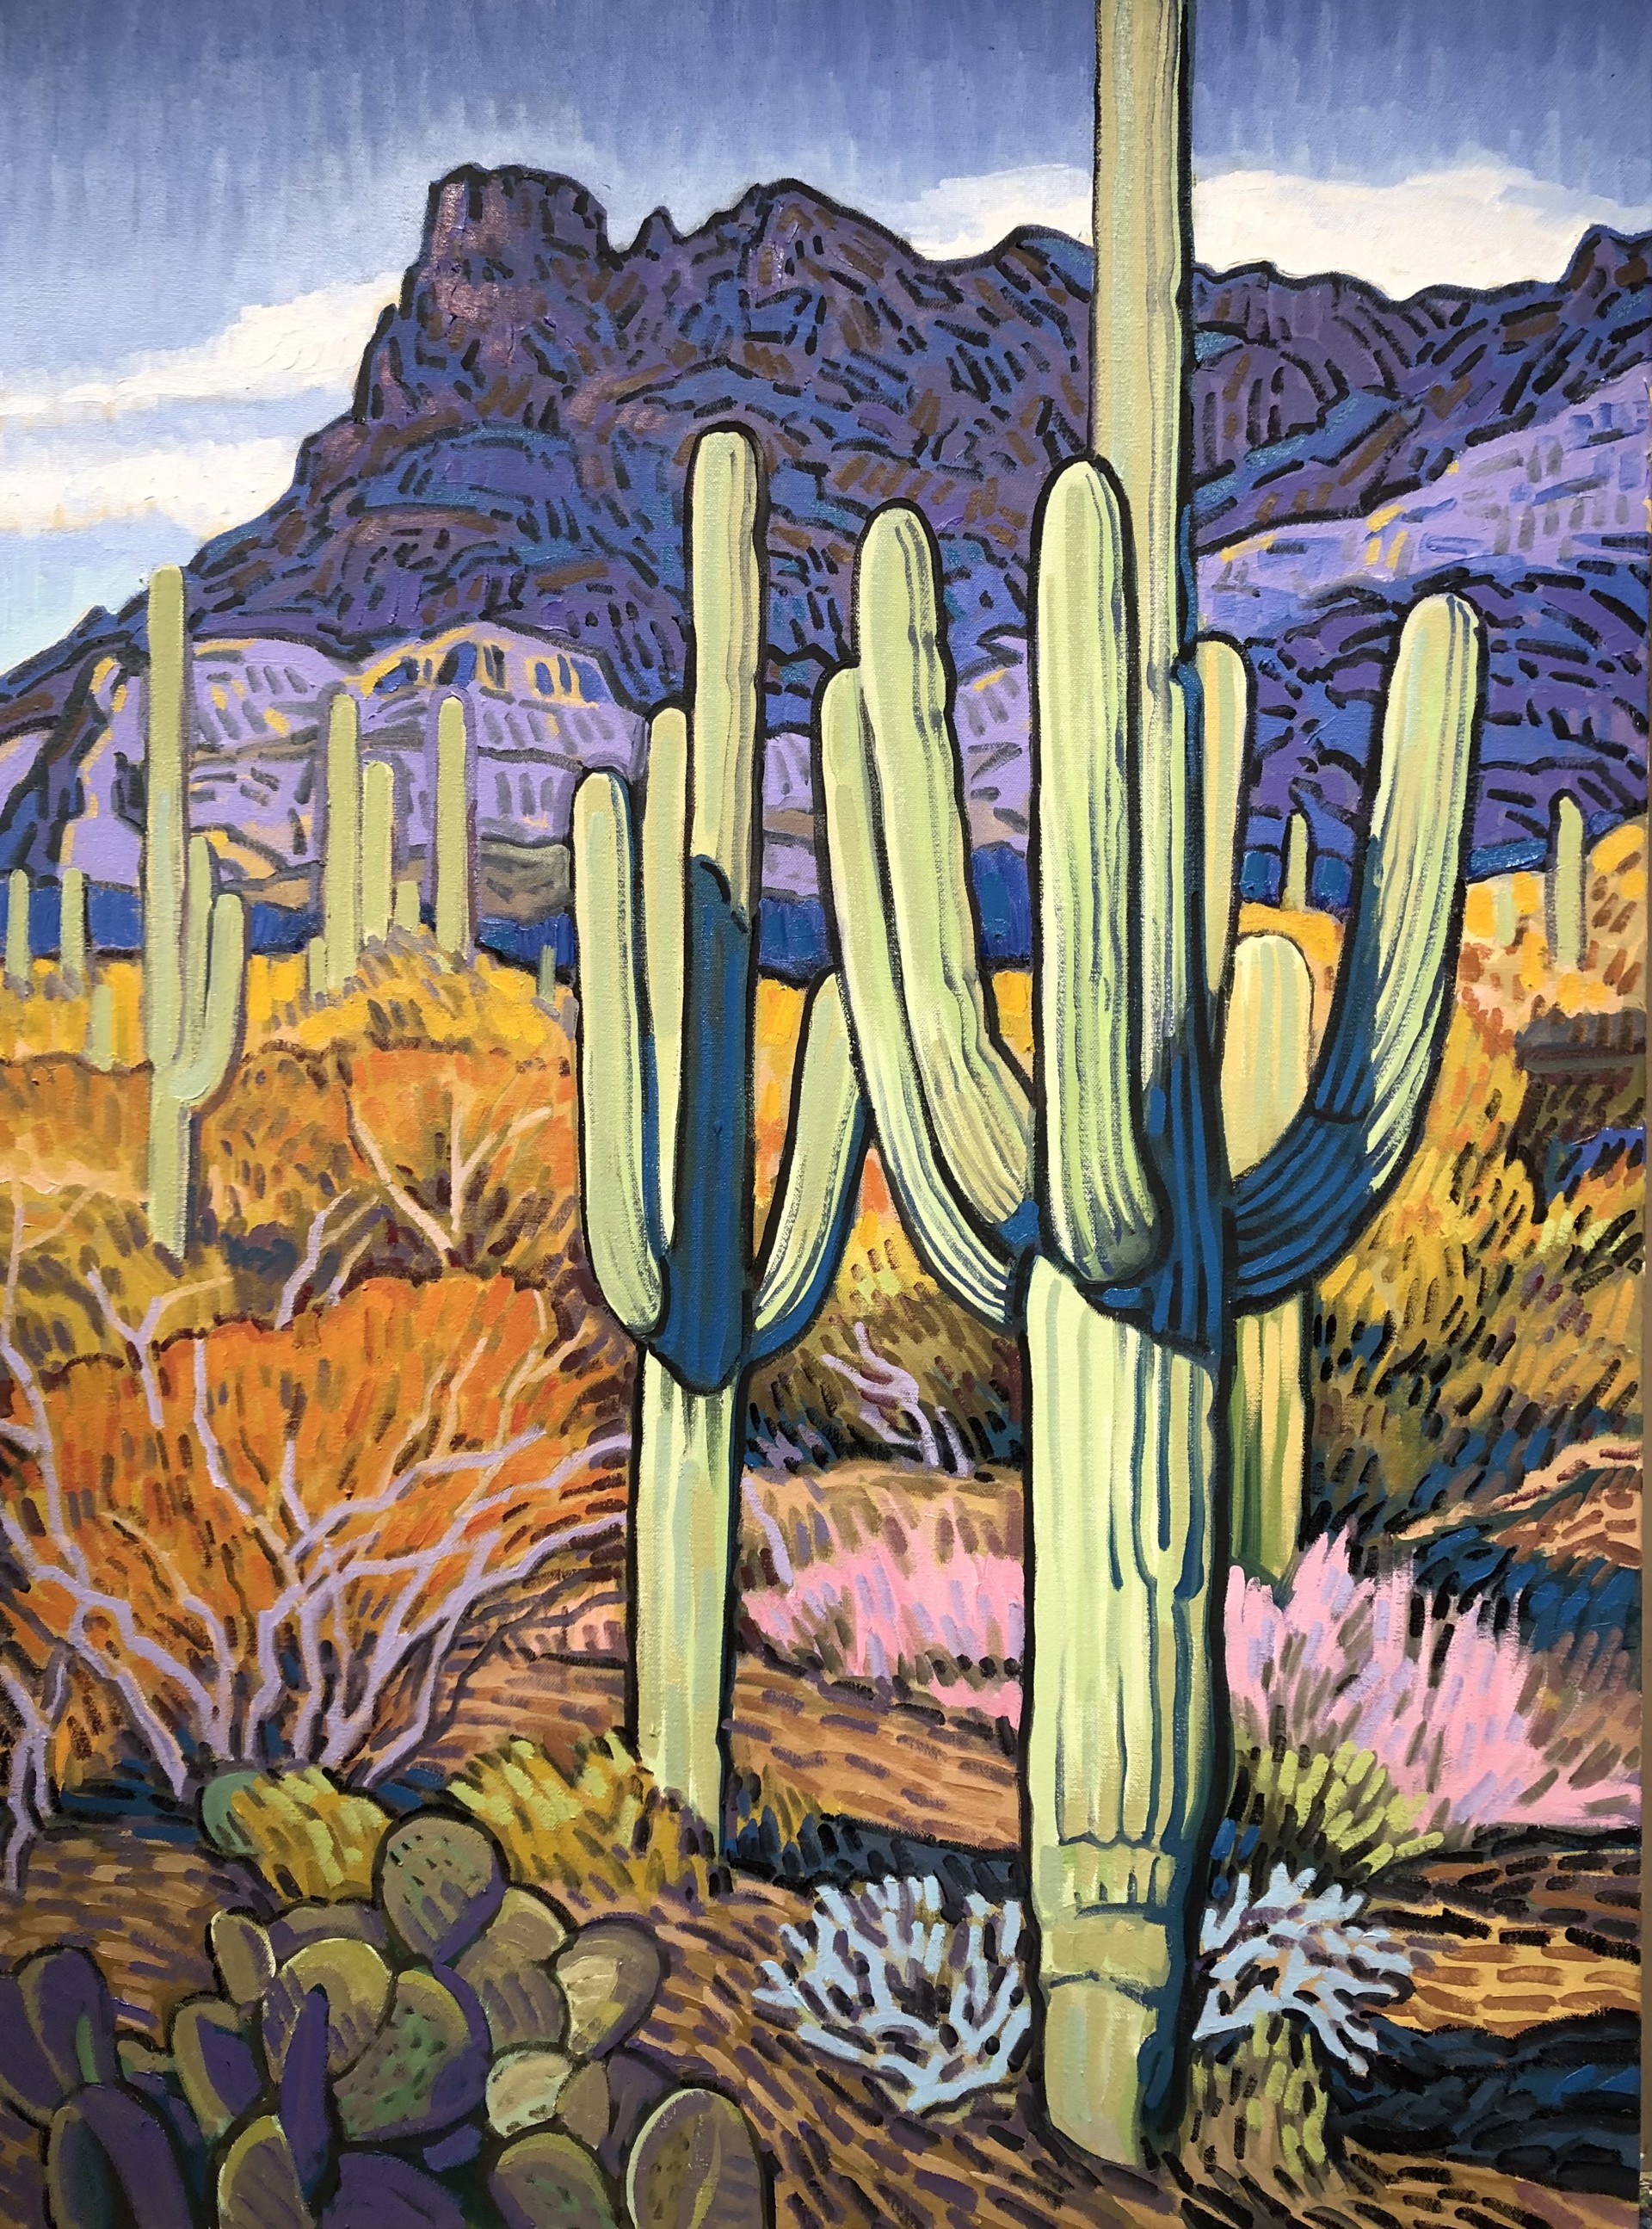 Saguaro by Brad Price